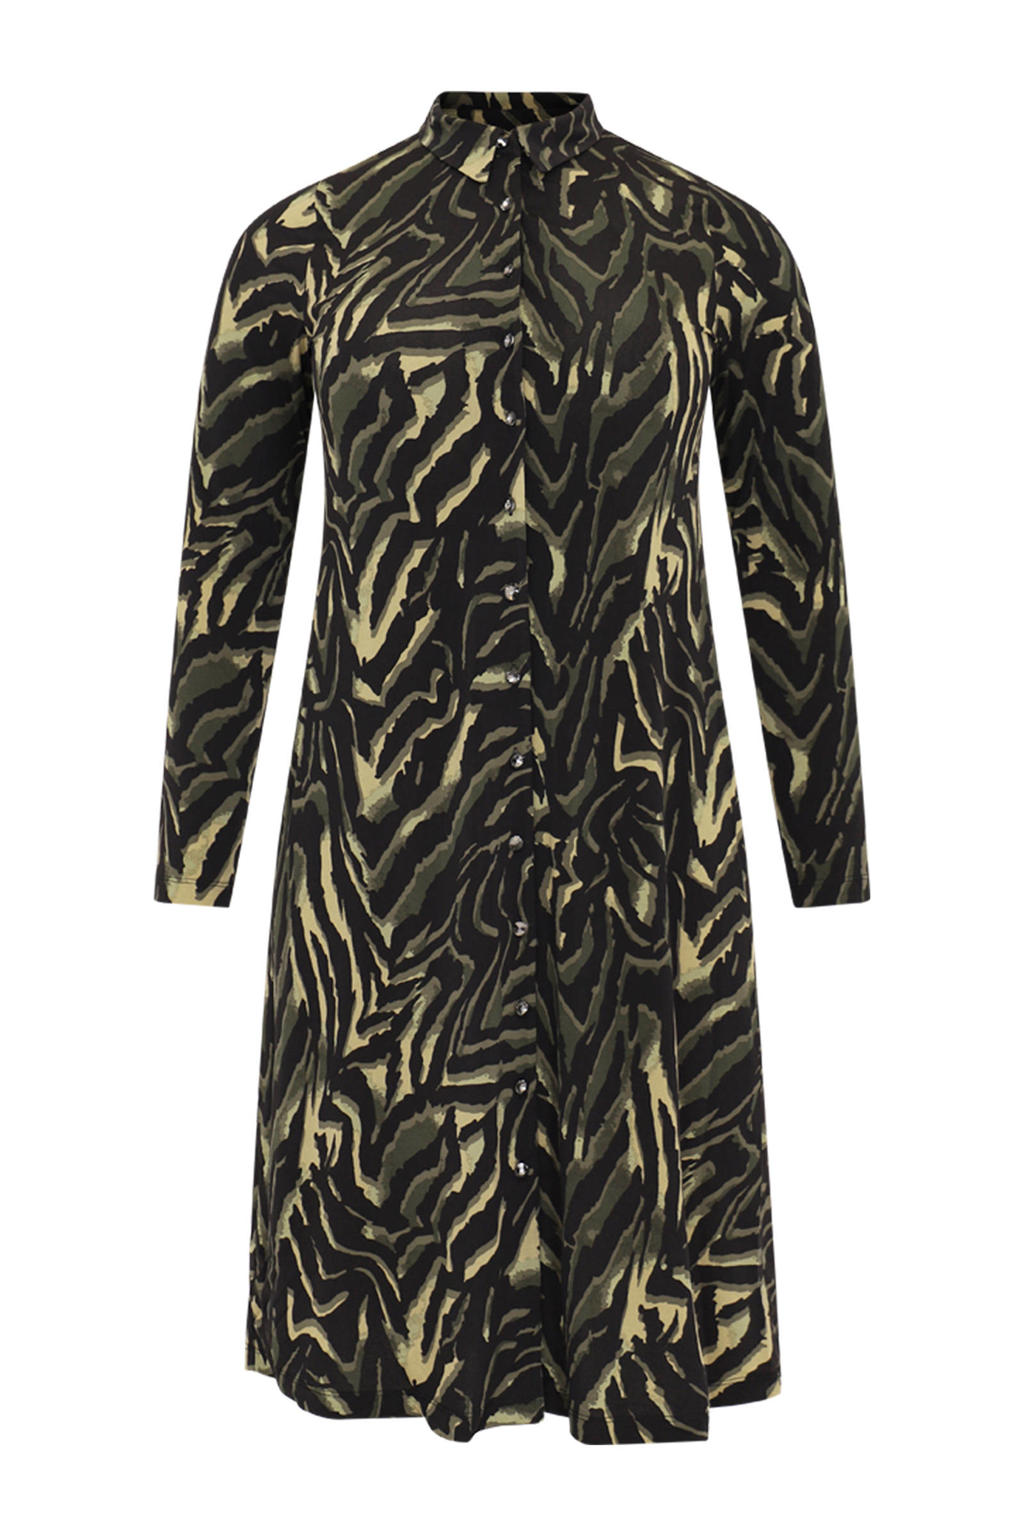 Olijfgroen, lichtgroen en zwarte dames Yoek jurk van polyester met zebraprint, lange mouwen, klassieke kraag en knoopsluiting